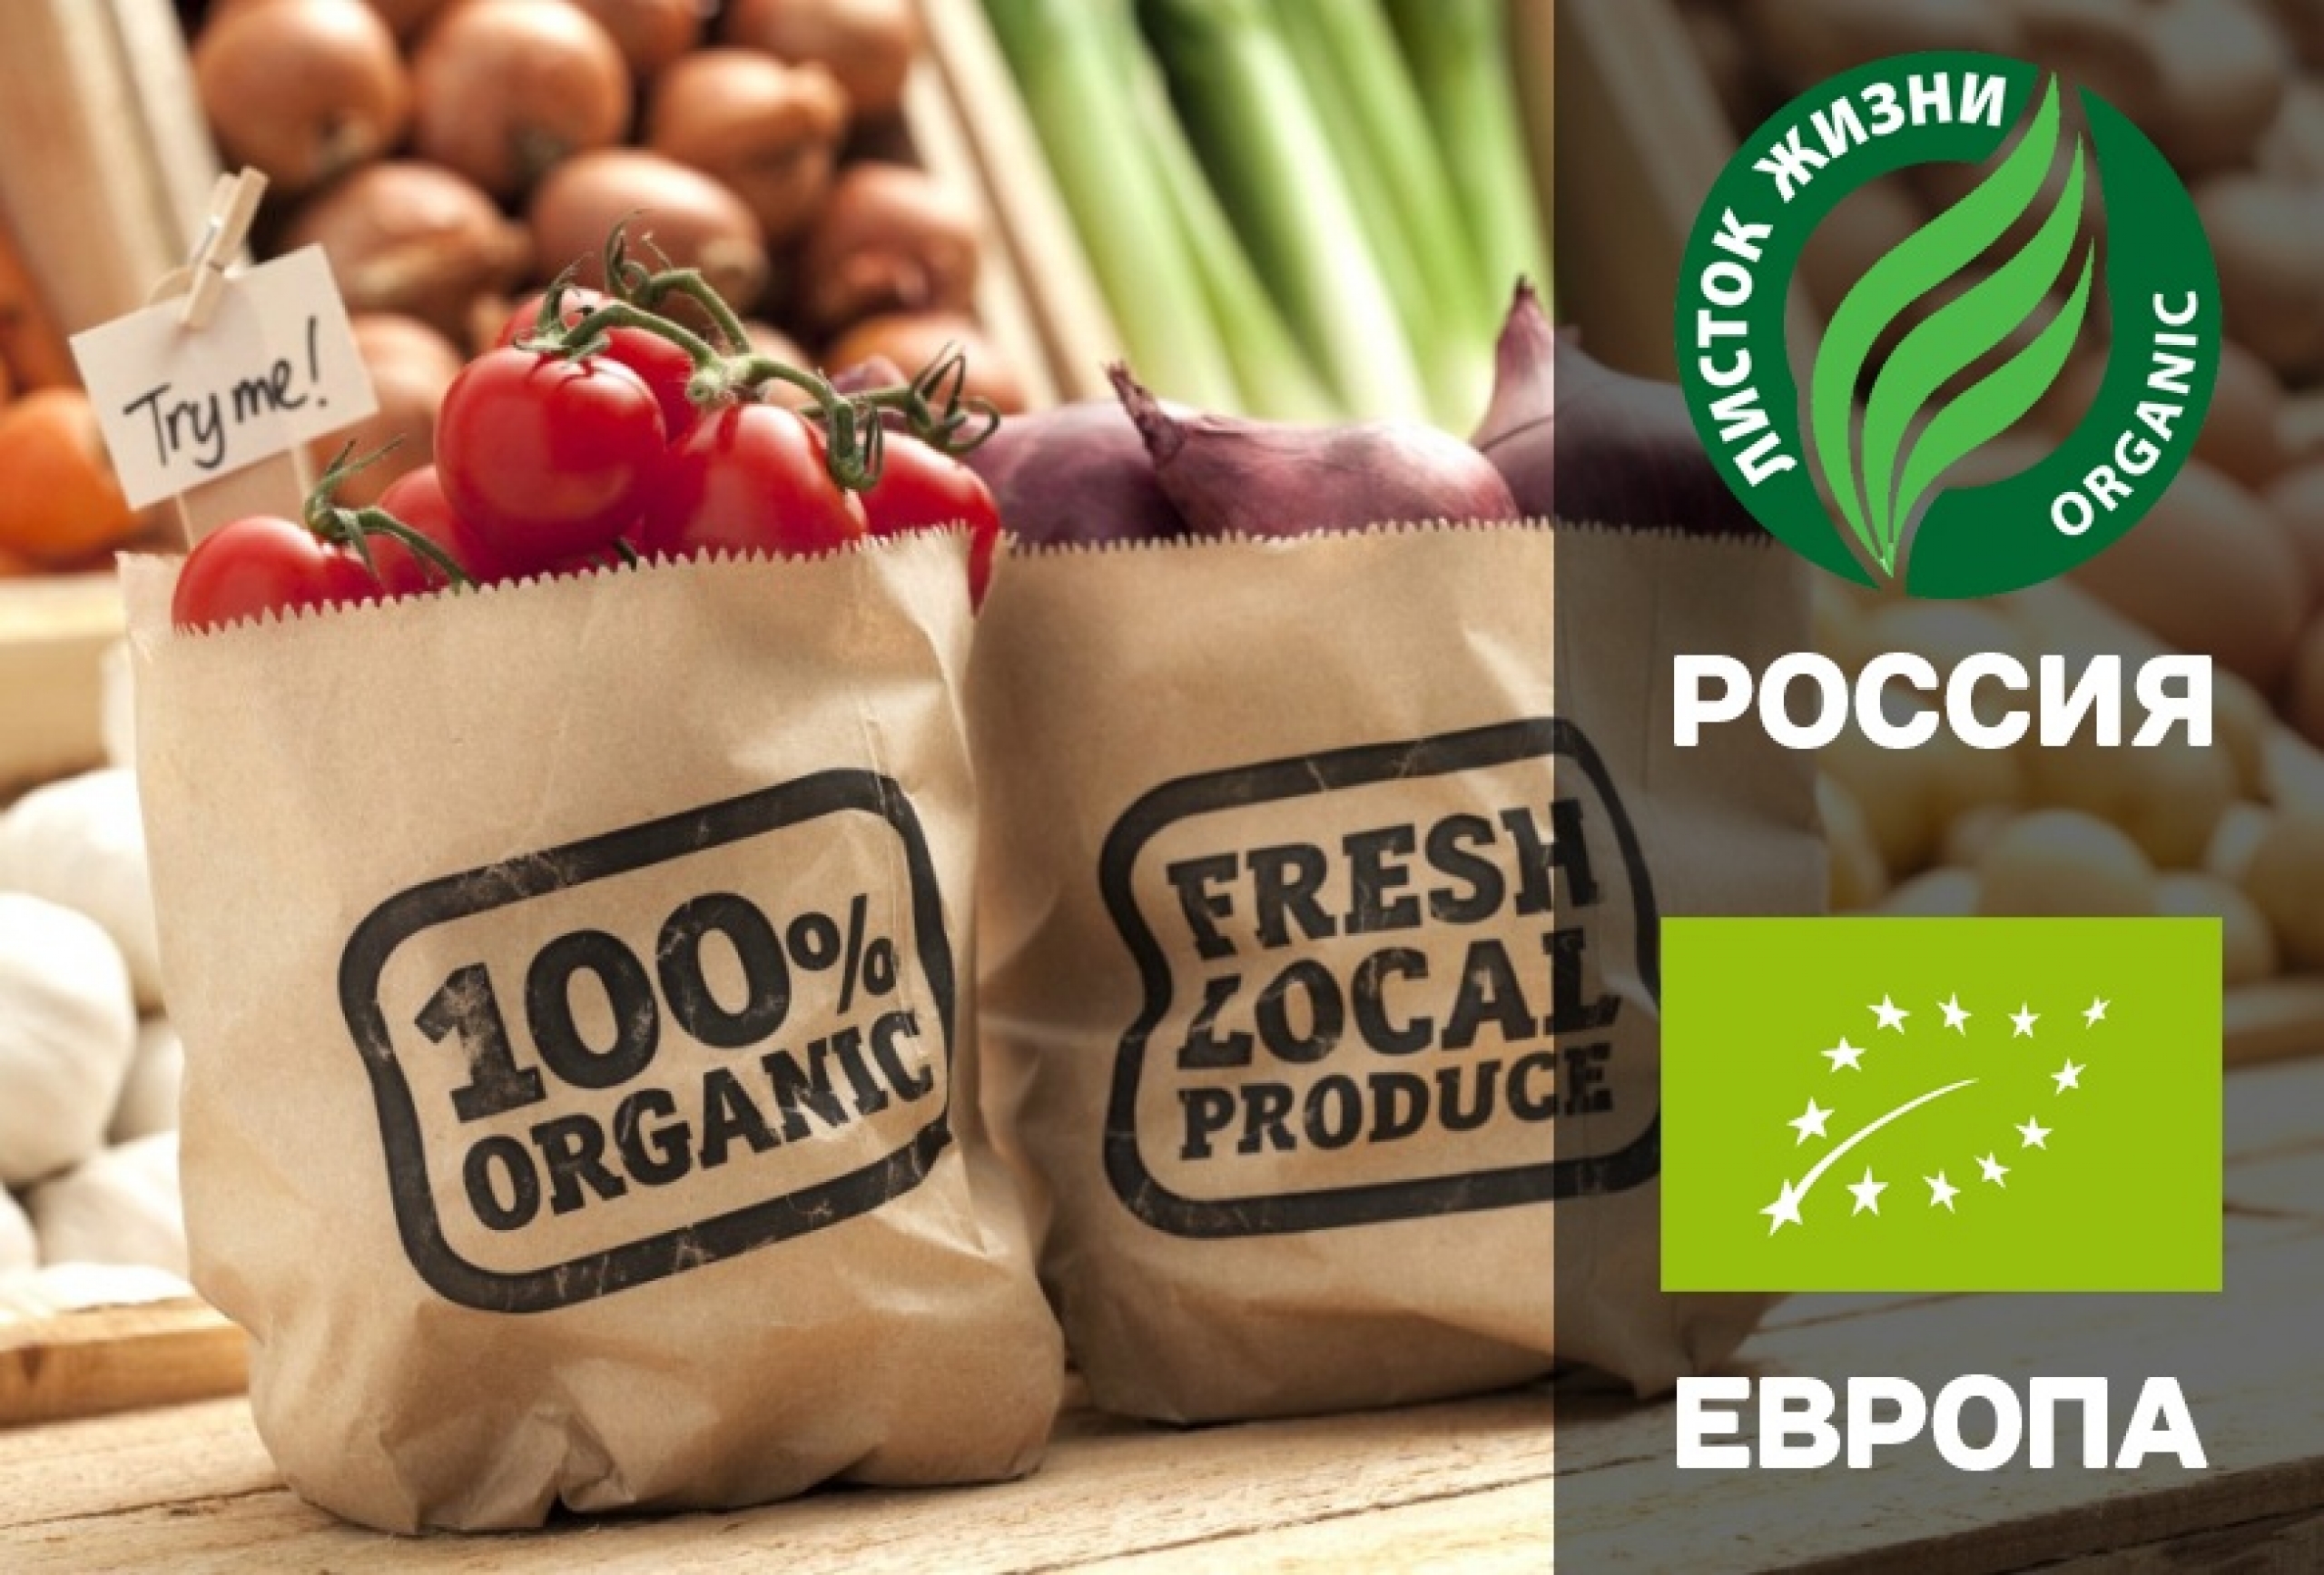 Органические продукты: польза для здоровья или дань моде